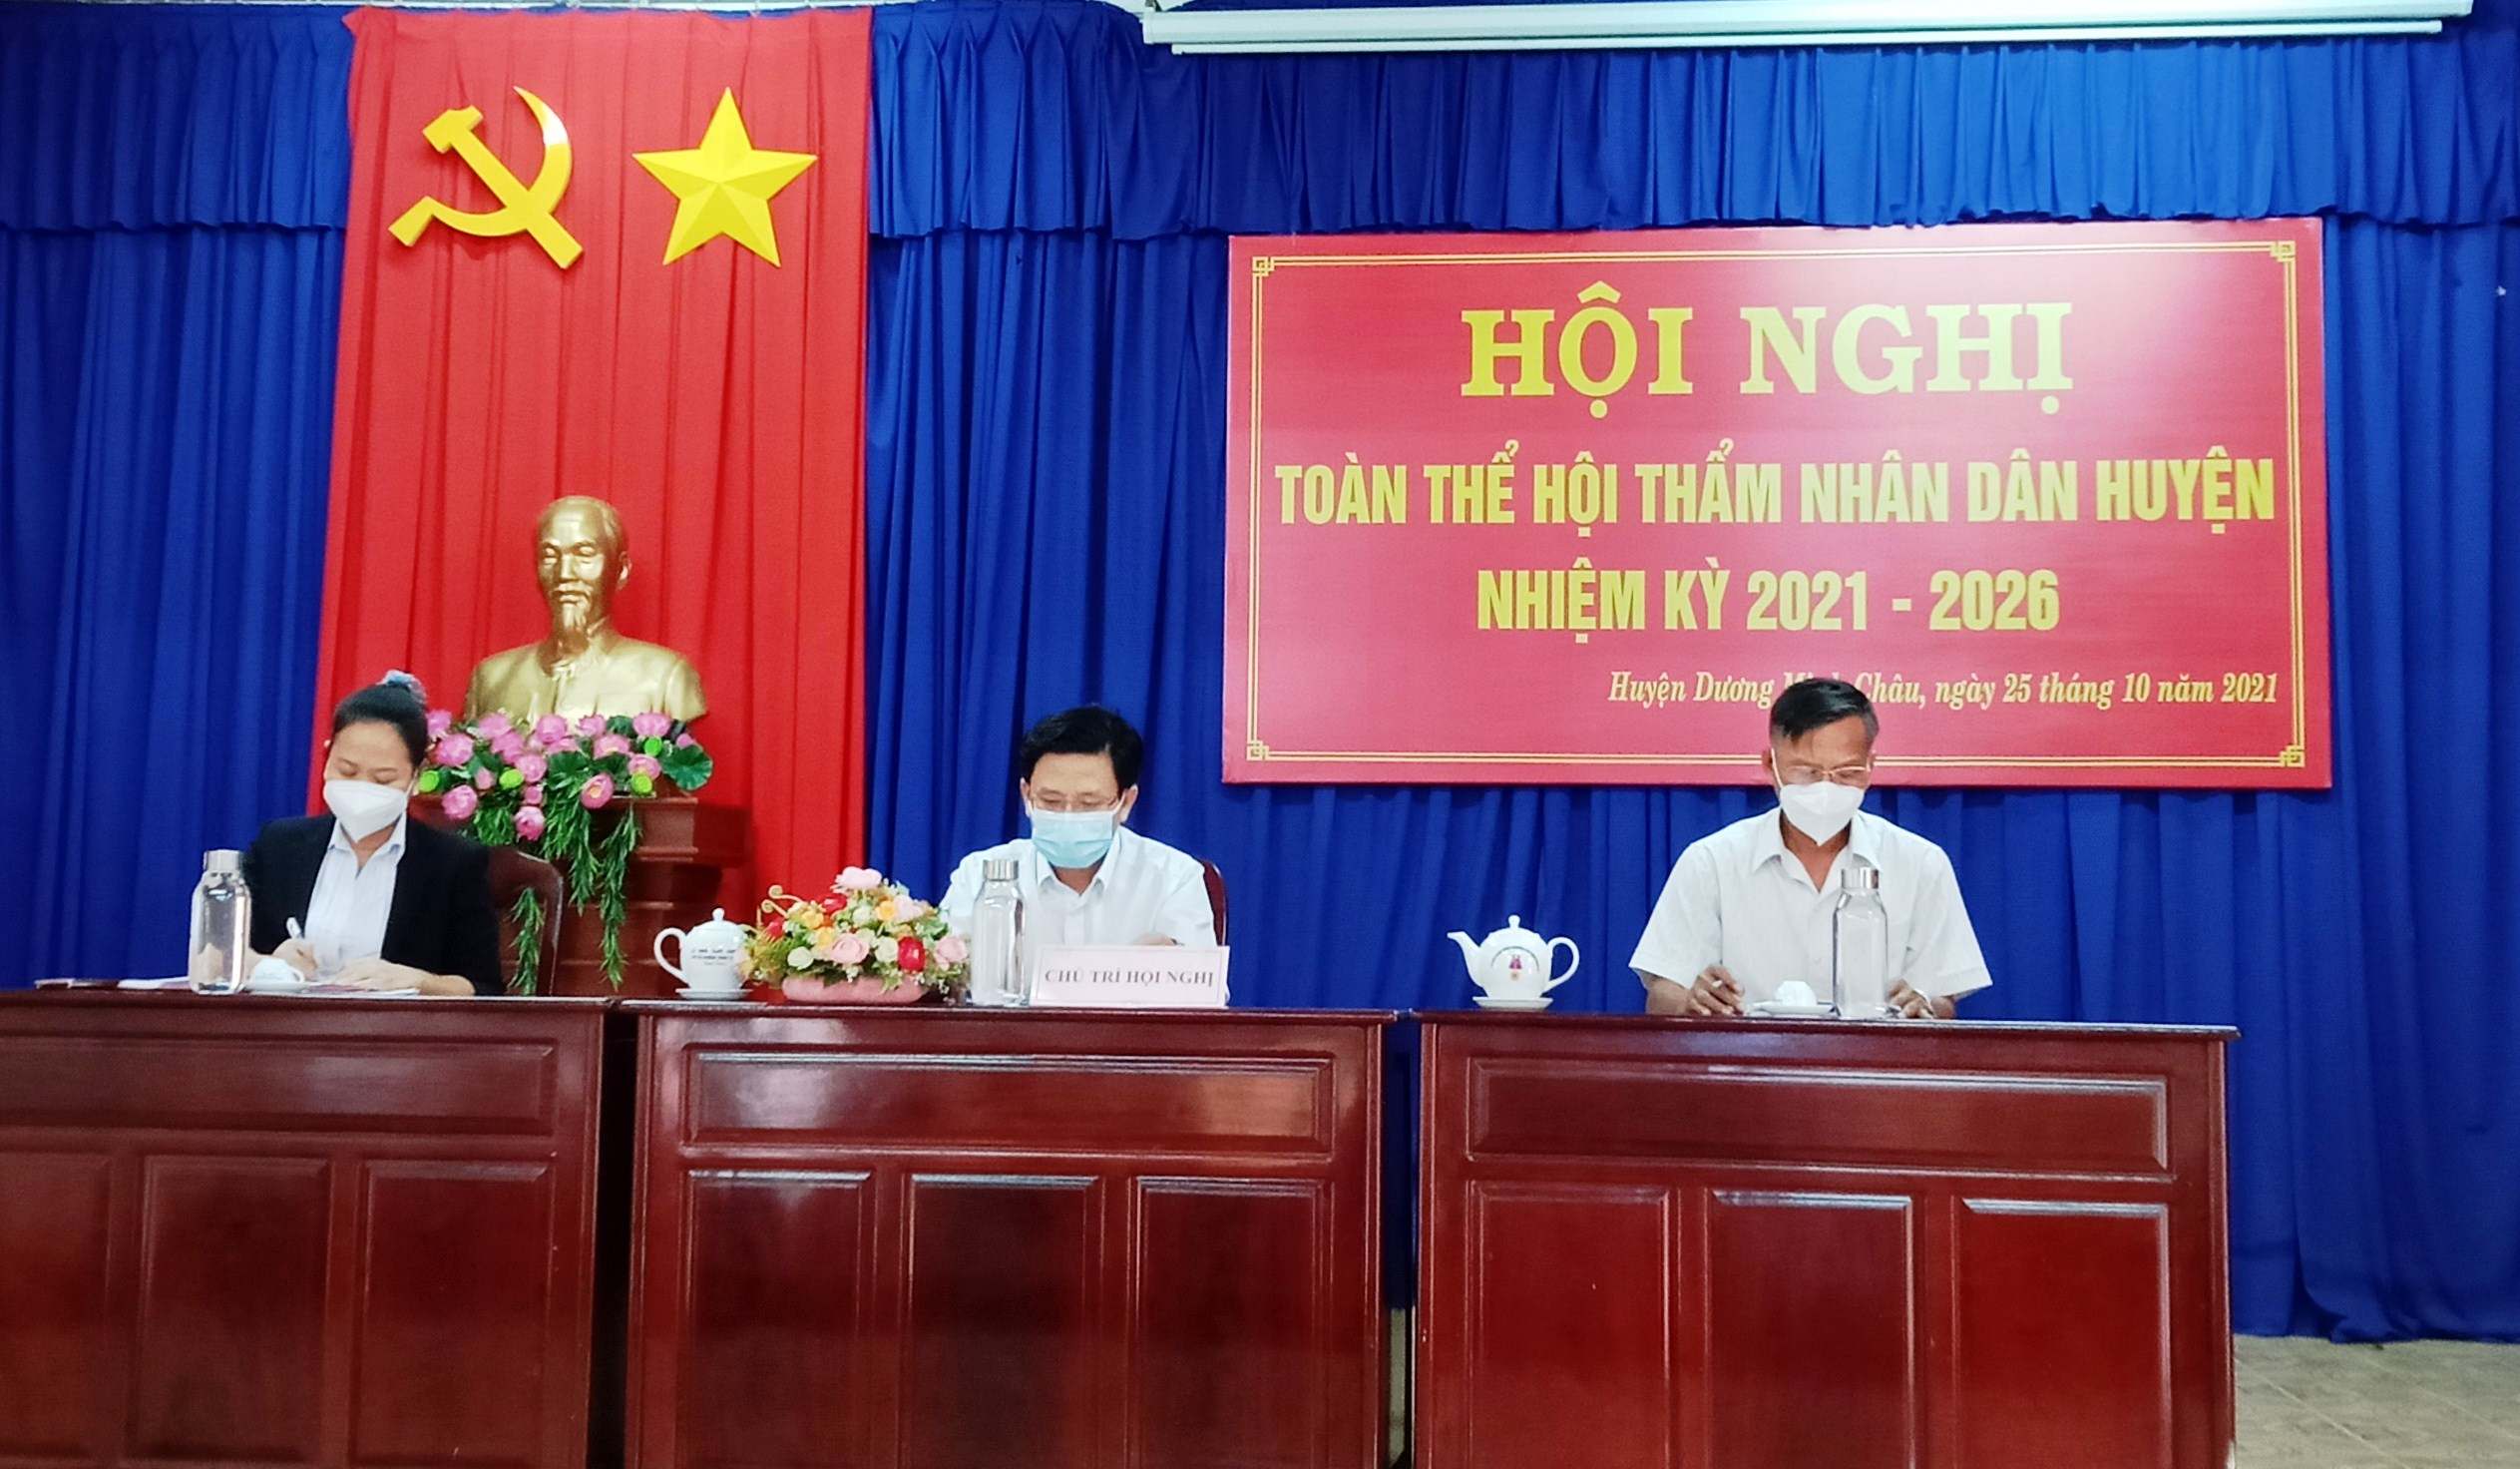 Huyện Dương Minh Châu: Tổ chức Hội nghị toàn thể Hội thẩm nhân dân nhiệm kỳ 2021 – 2026